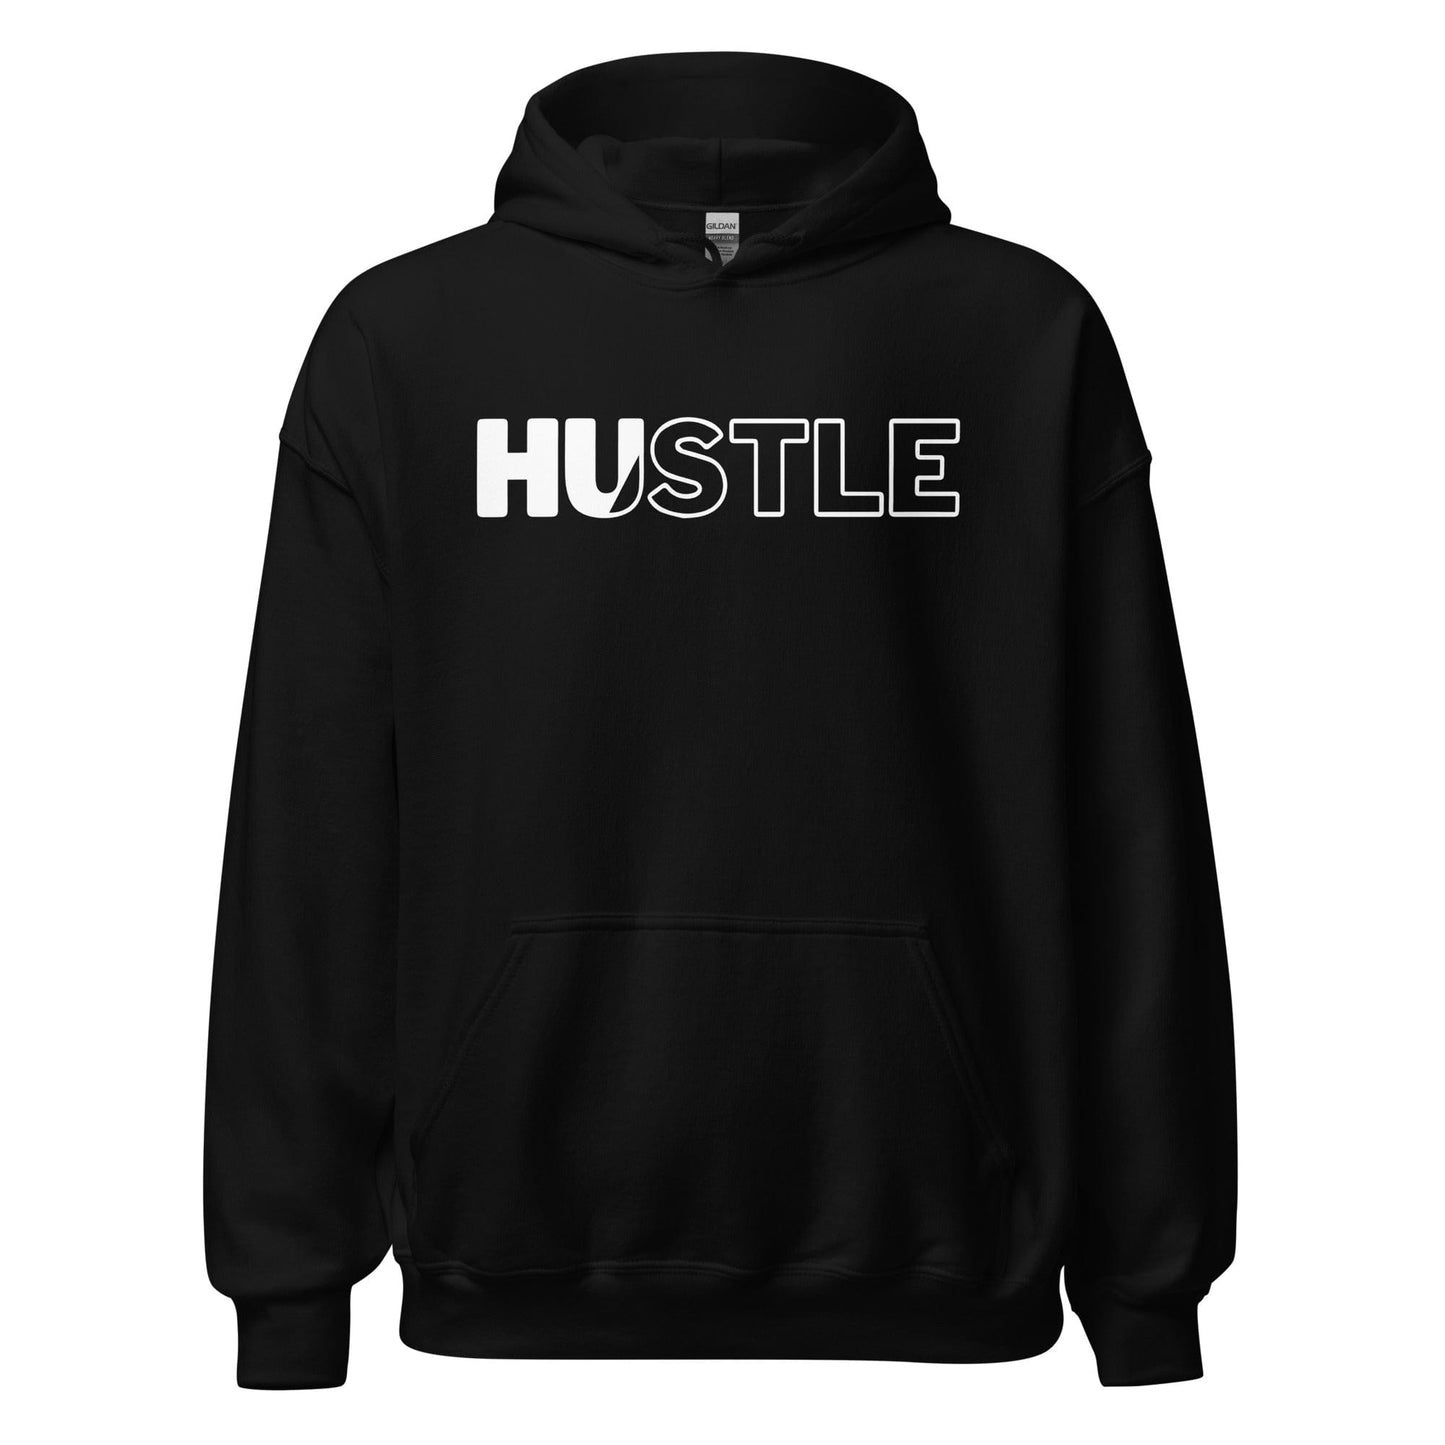 Hustle - Adult Hoodie